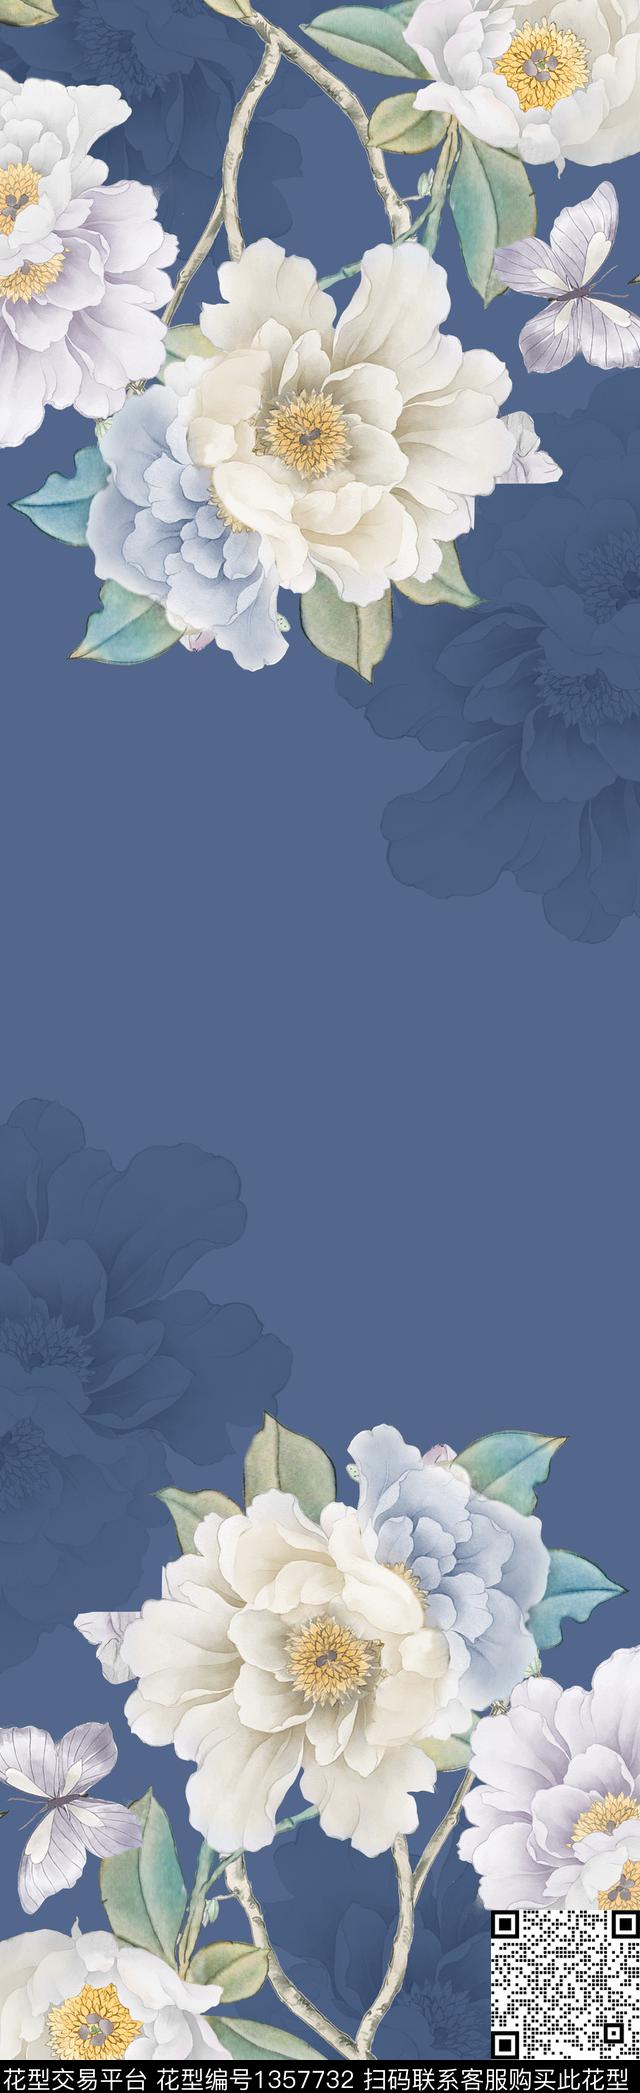 2020-9-18.jpg - 1357732 - 数码花型 男装 风景景观 - 数码印花花型 － 长巾花型设计 － 瓦栏